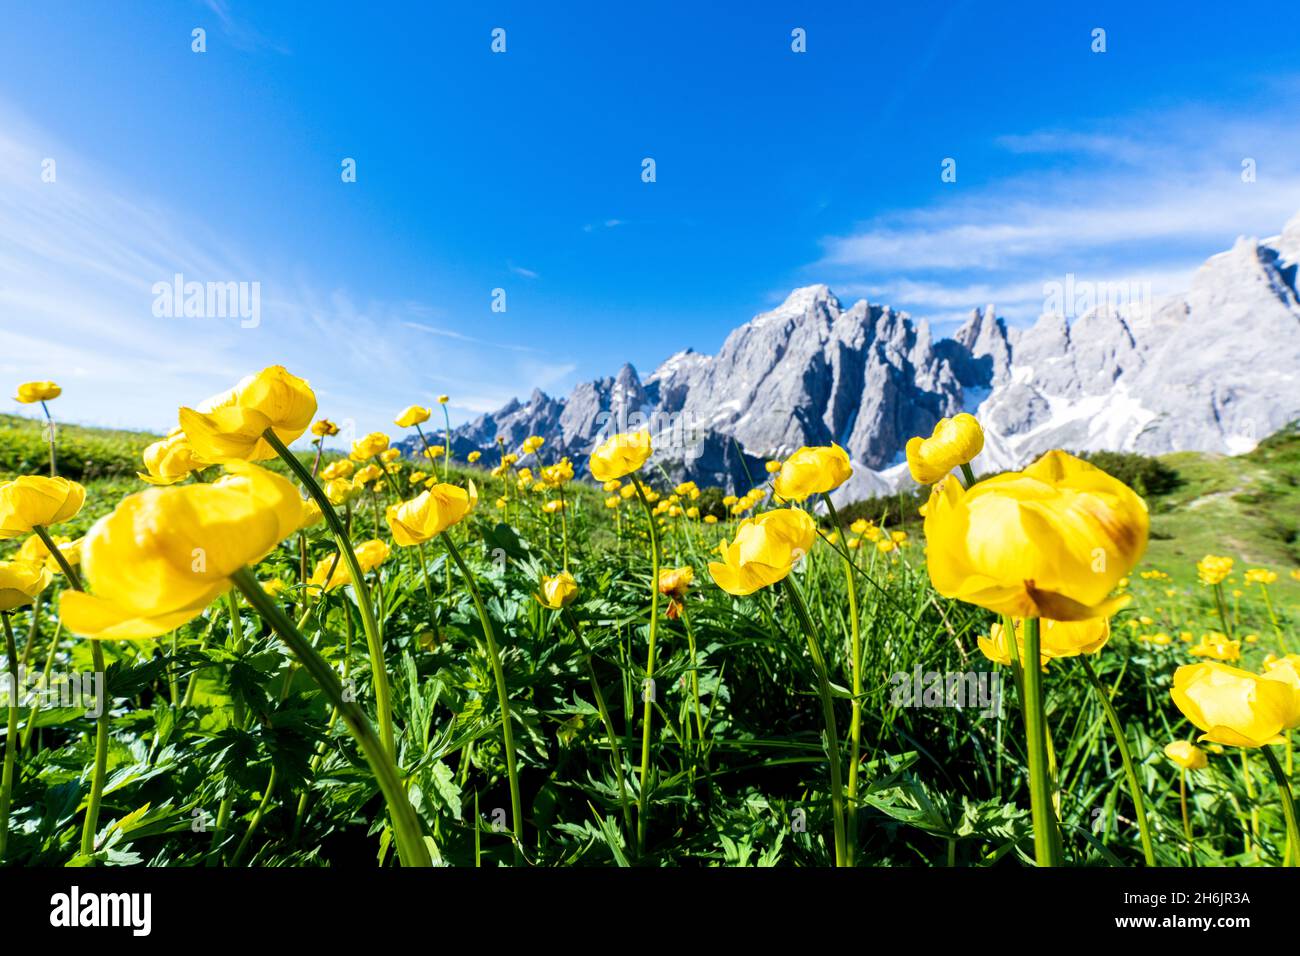 Bottondoro (globeflowers) (Trollius europaeus) flowers in bloom framing Cima dei Colesei and Popera group mountains, Comelico, Dolomites, Italy Stock Photo